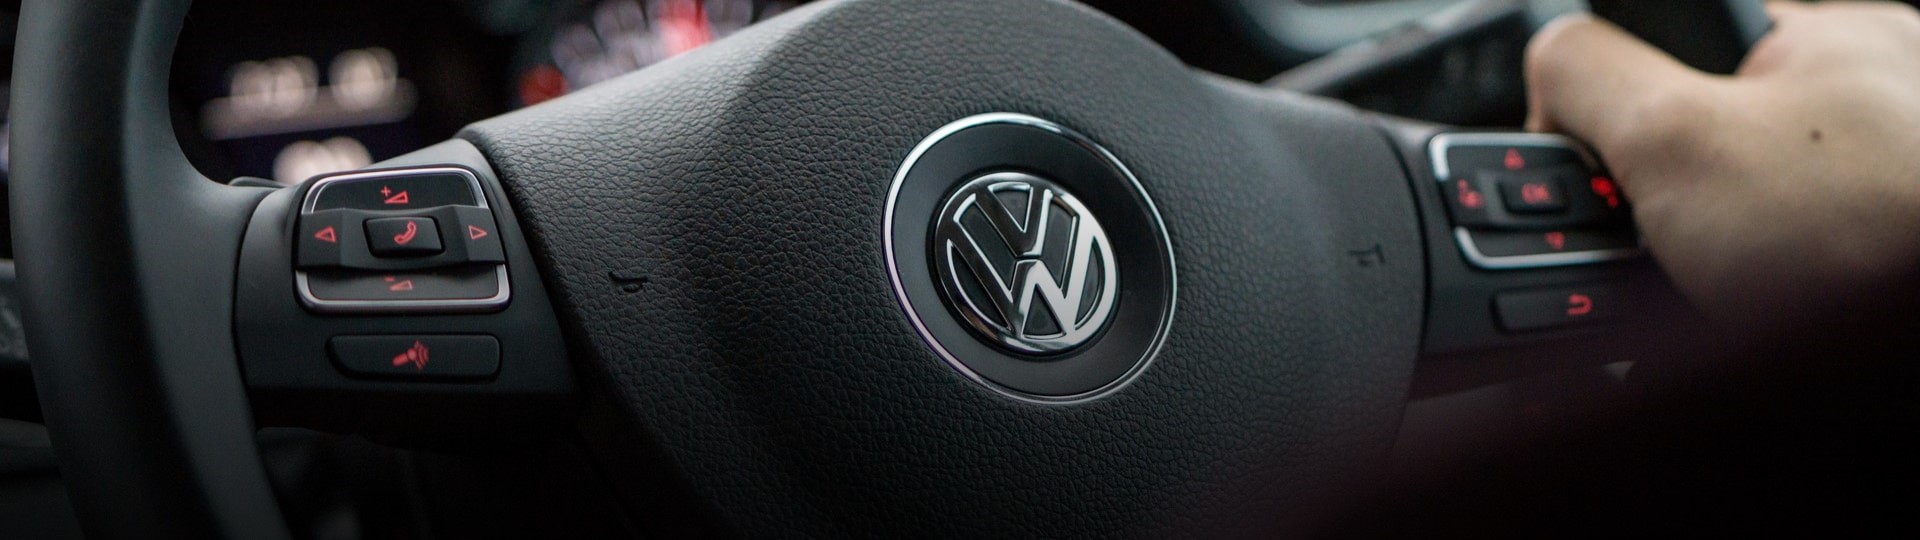 Volkswagen očekává zvýšení svého podílu na trhu